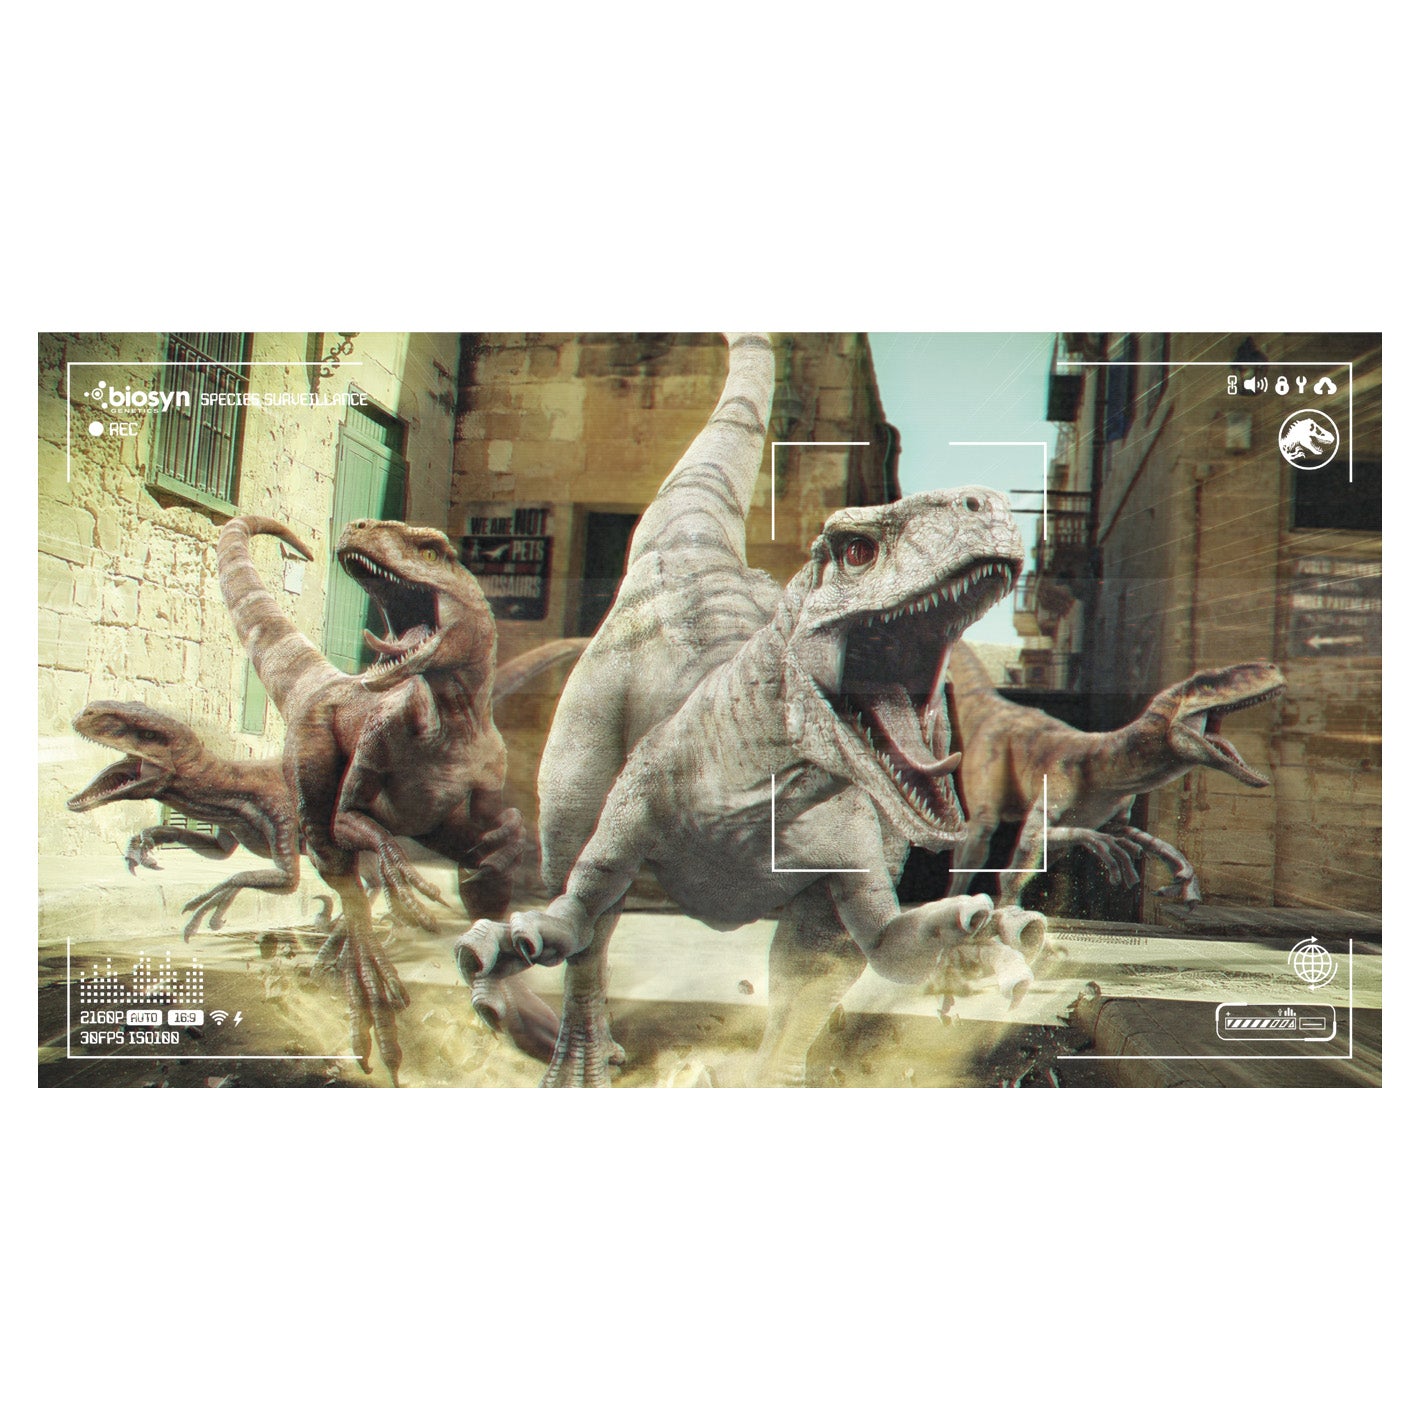 Survaillance Atrociraptor Jurassic - – Dominion: Fathead Poster World Officially